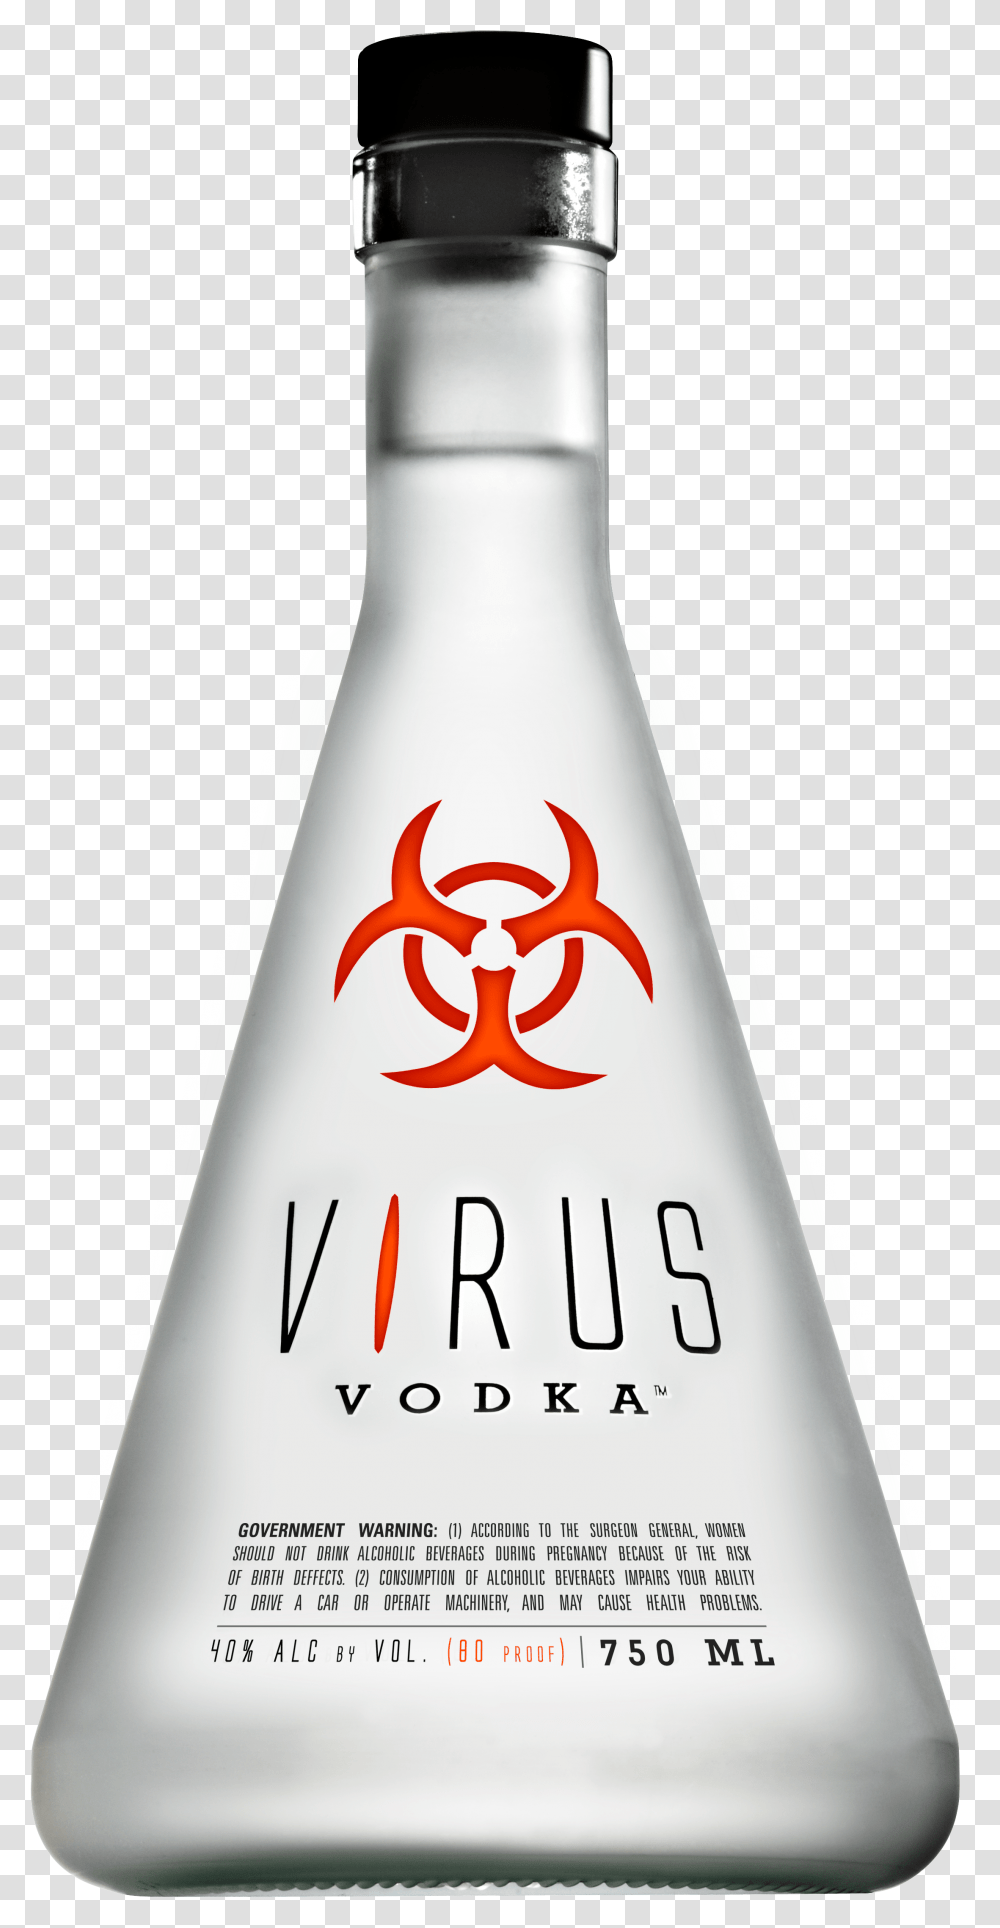 Svg Free Stock Virus Vodka Brands Bottles Design Vodka Vrus, Liquor, Alcohol, Beverage, Drink Transparent Png